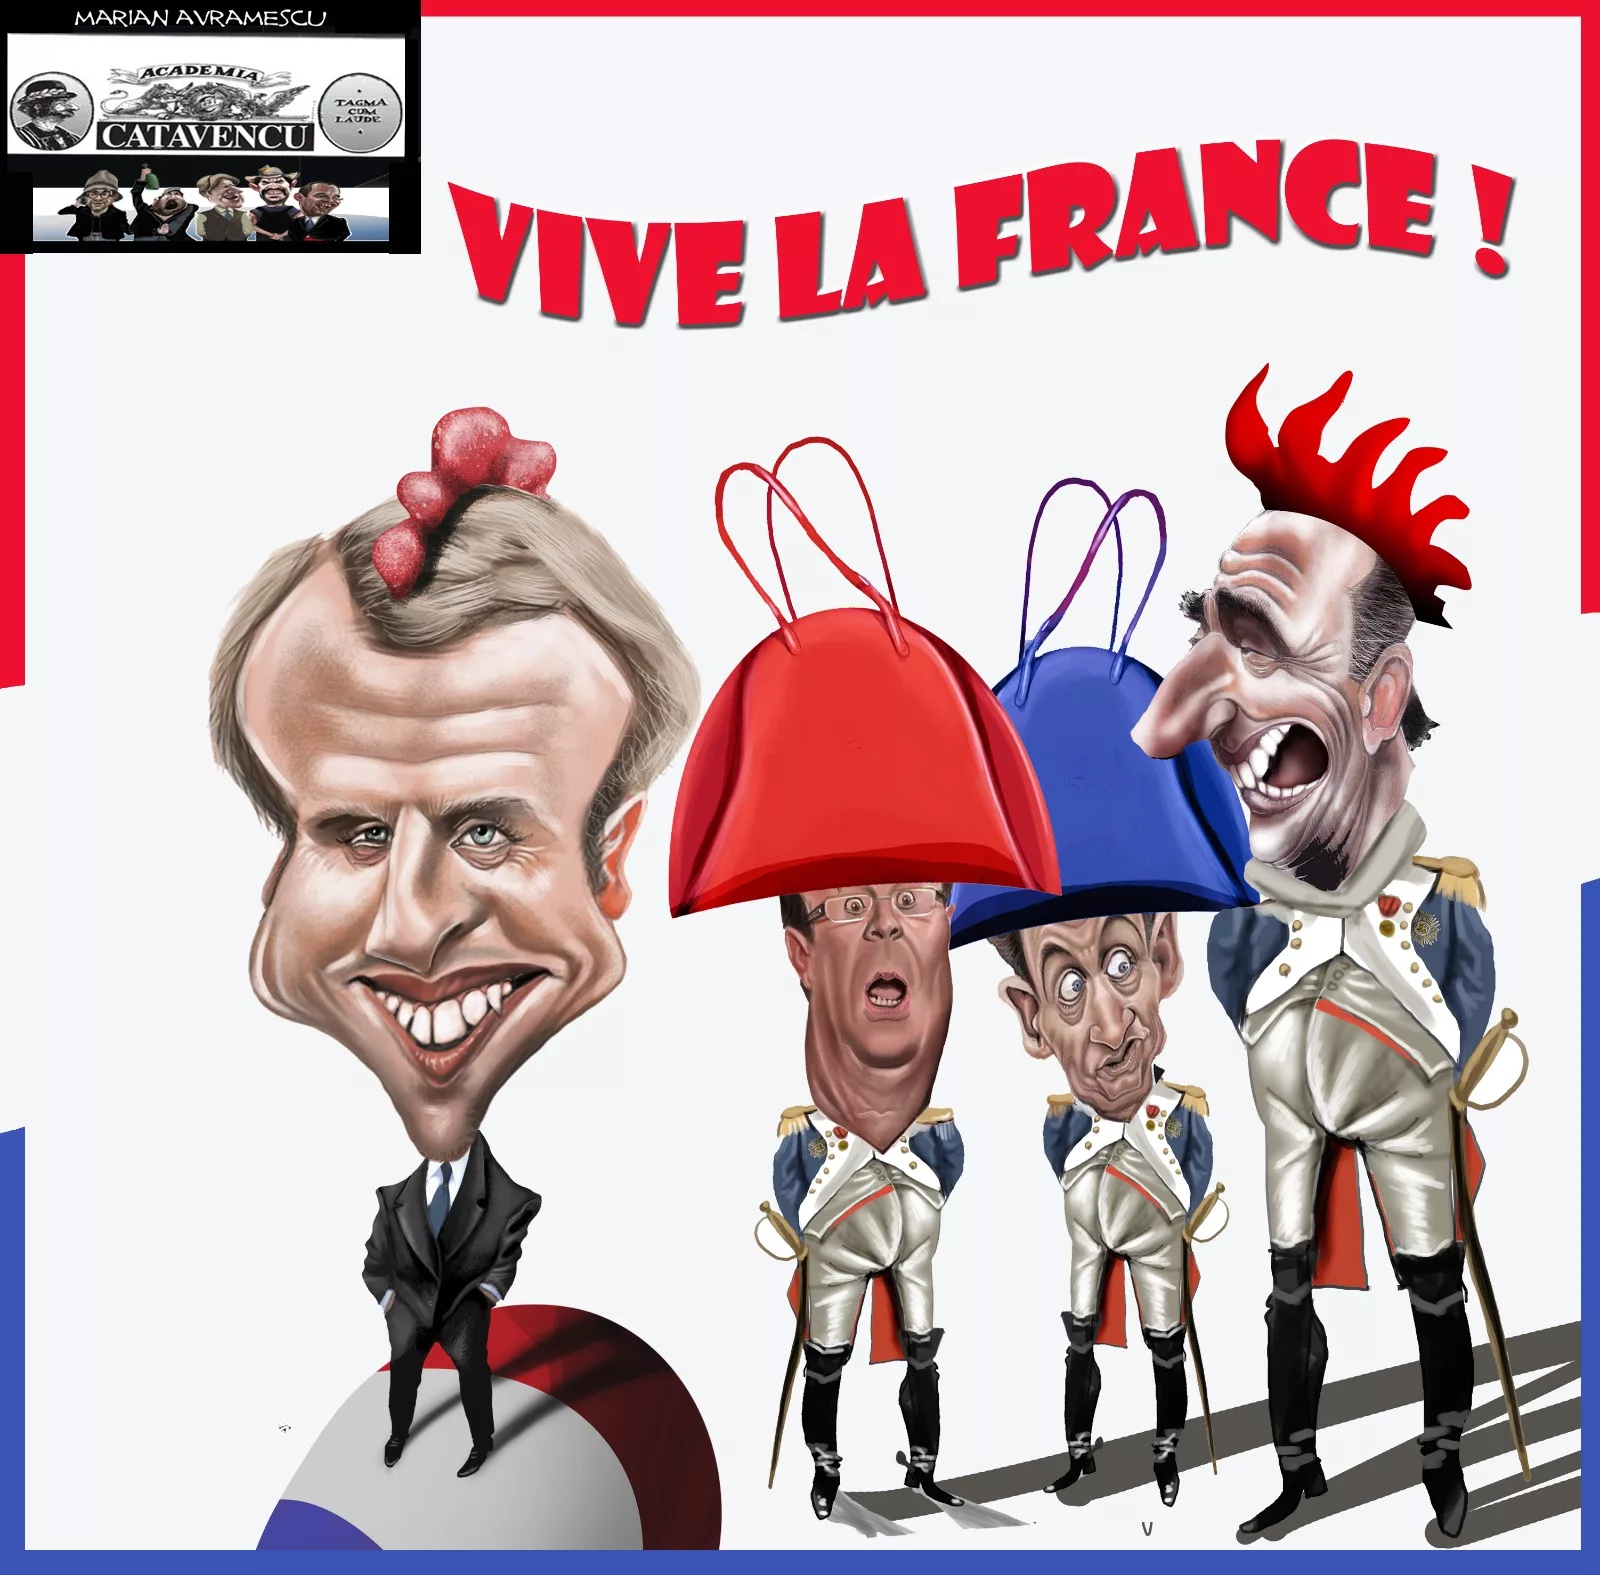 Macron știe ce-i lipsește Franței la EURO și pregătește o extremă dreaptă